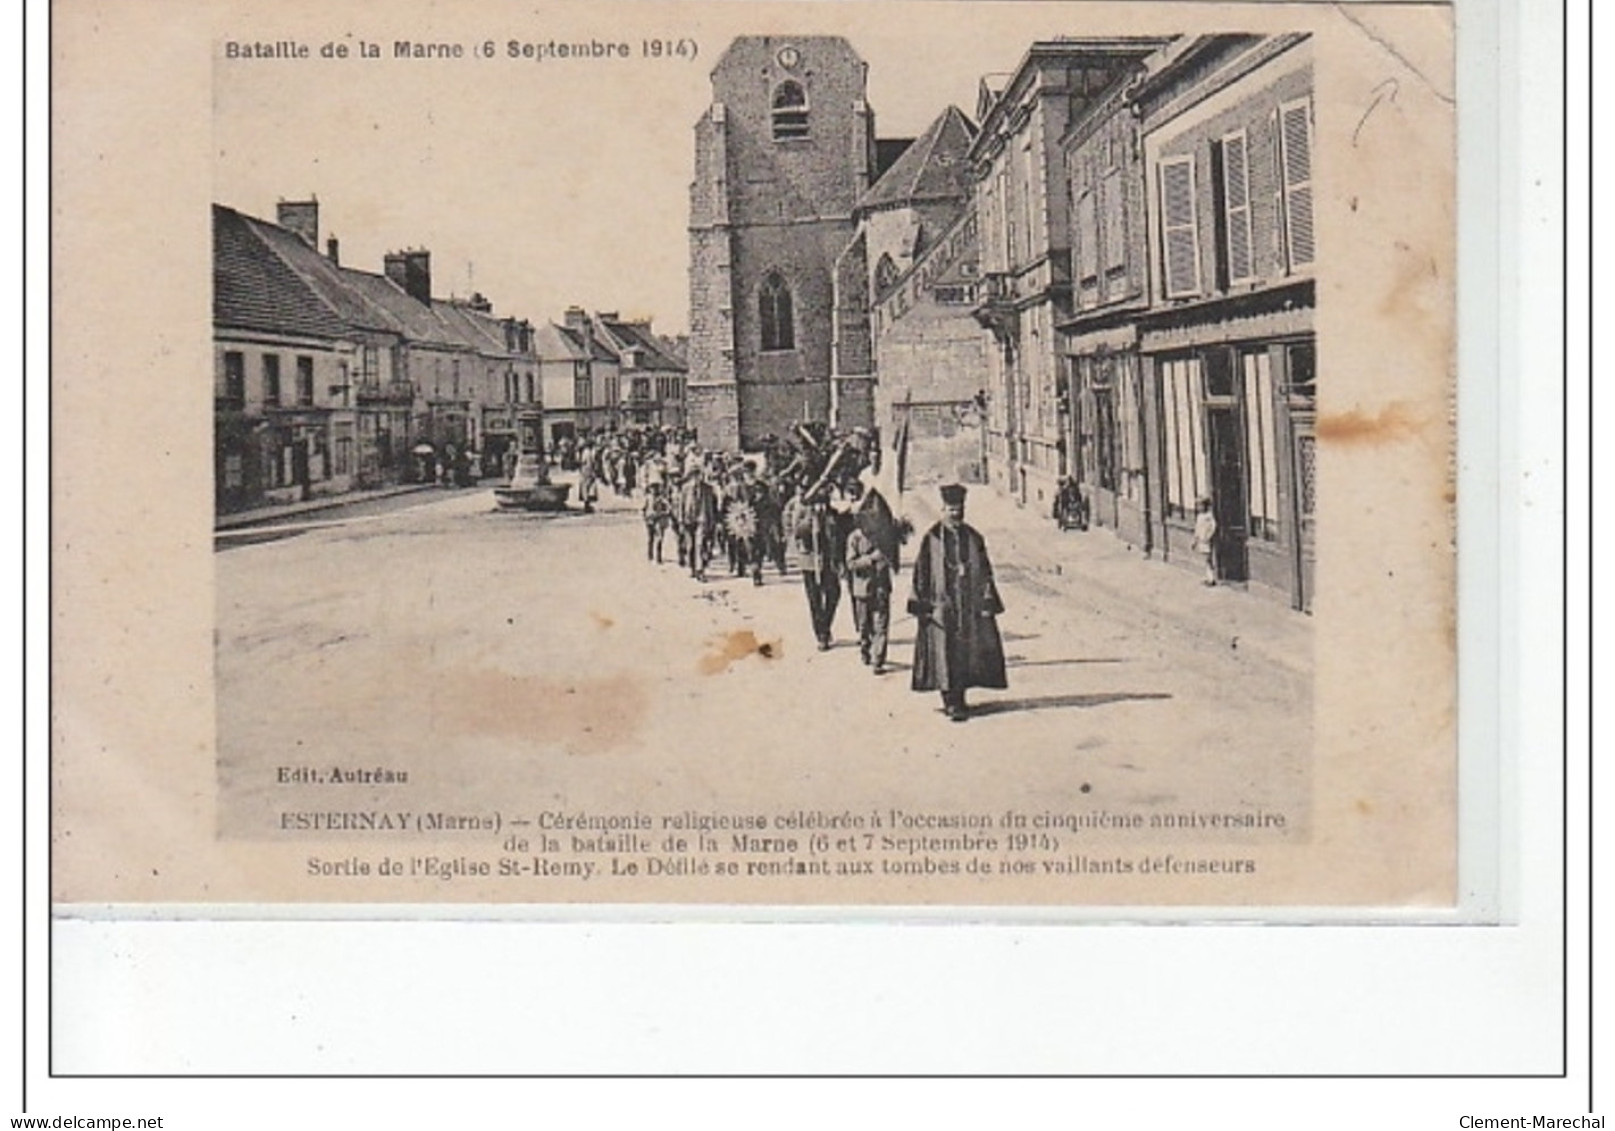 ESTERNAY - 5ème Anniversaire De Bataille De La Marne (6 Septembre 1914) - Sortie De L'église St Remy - état - Esternay